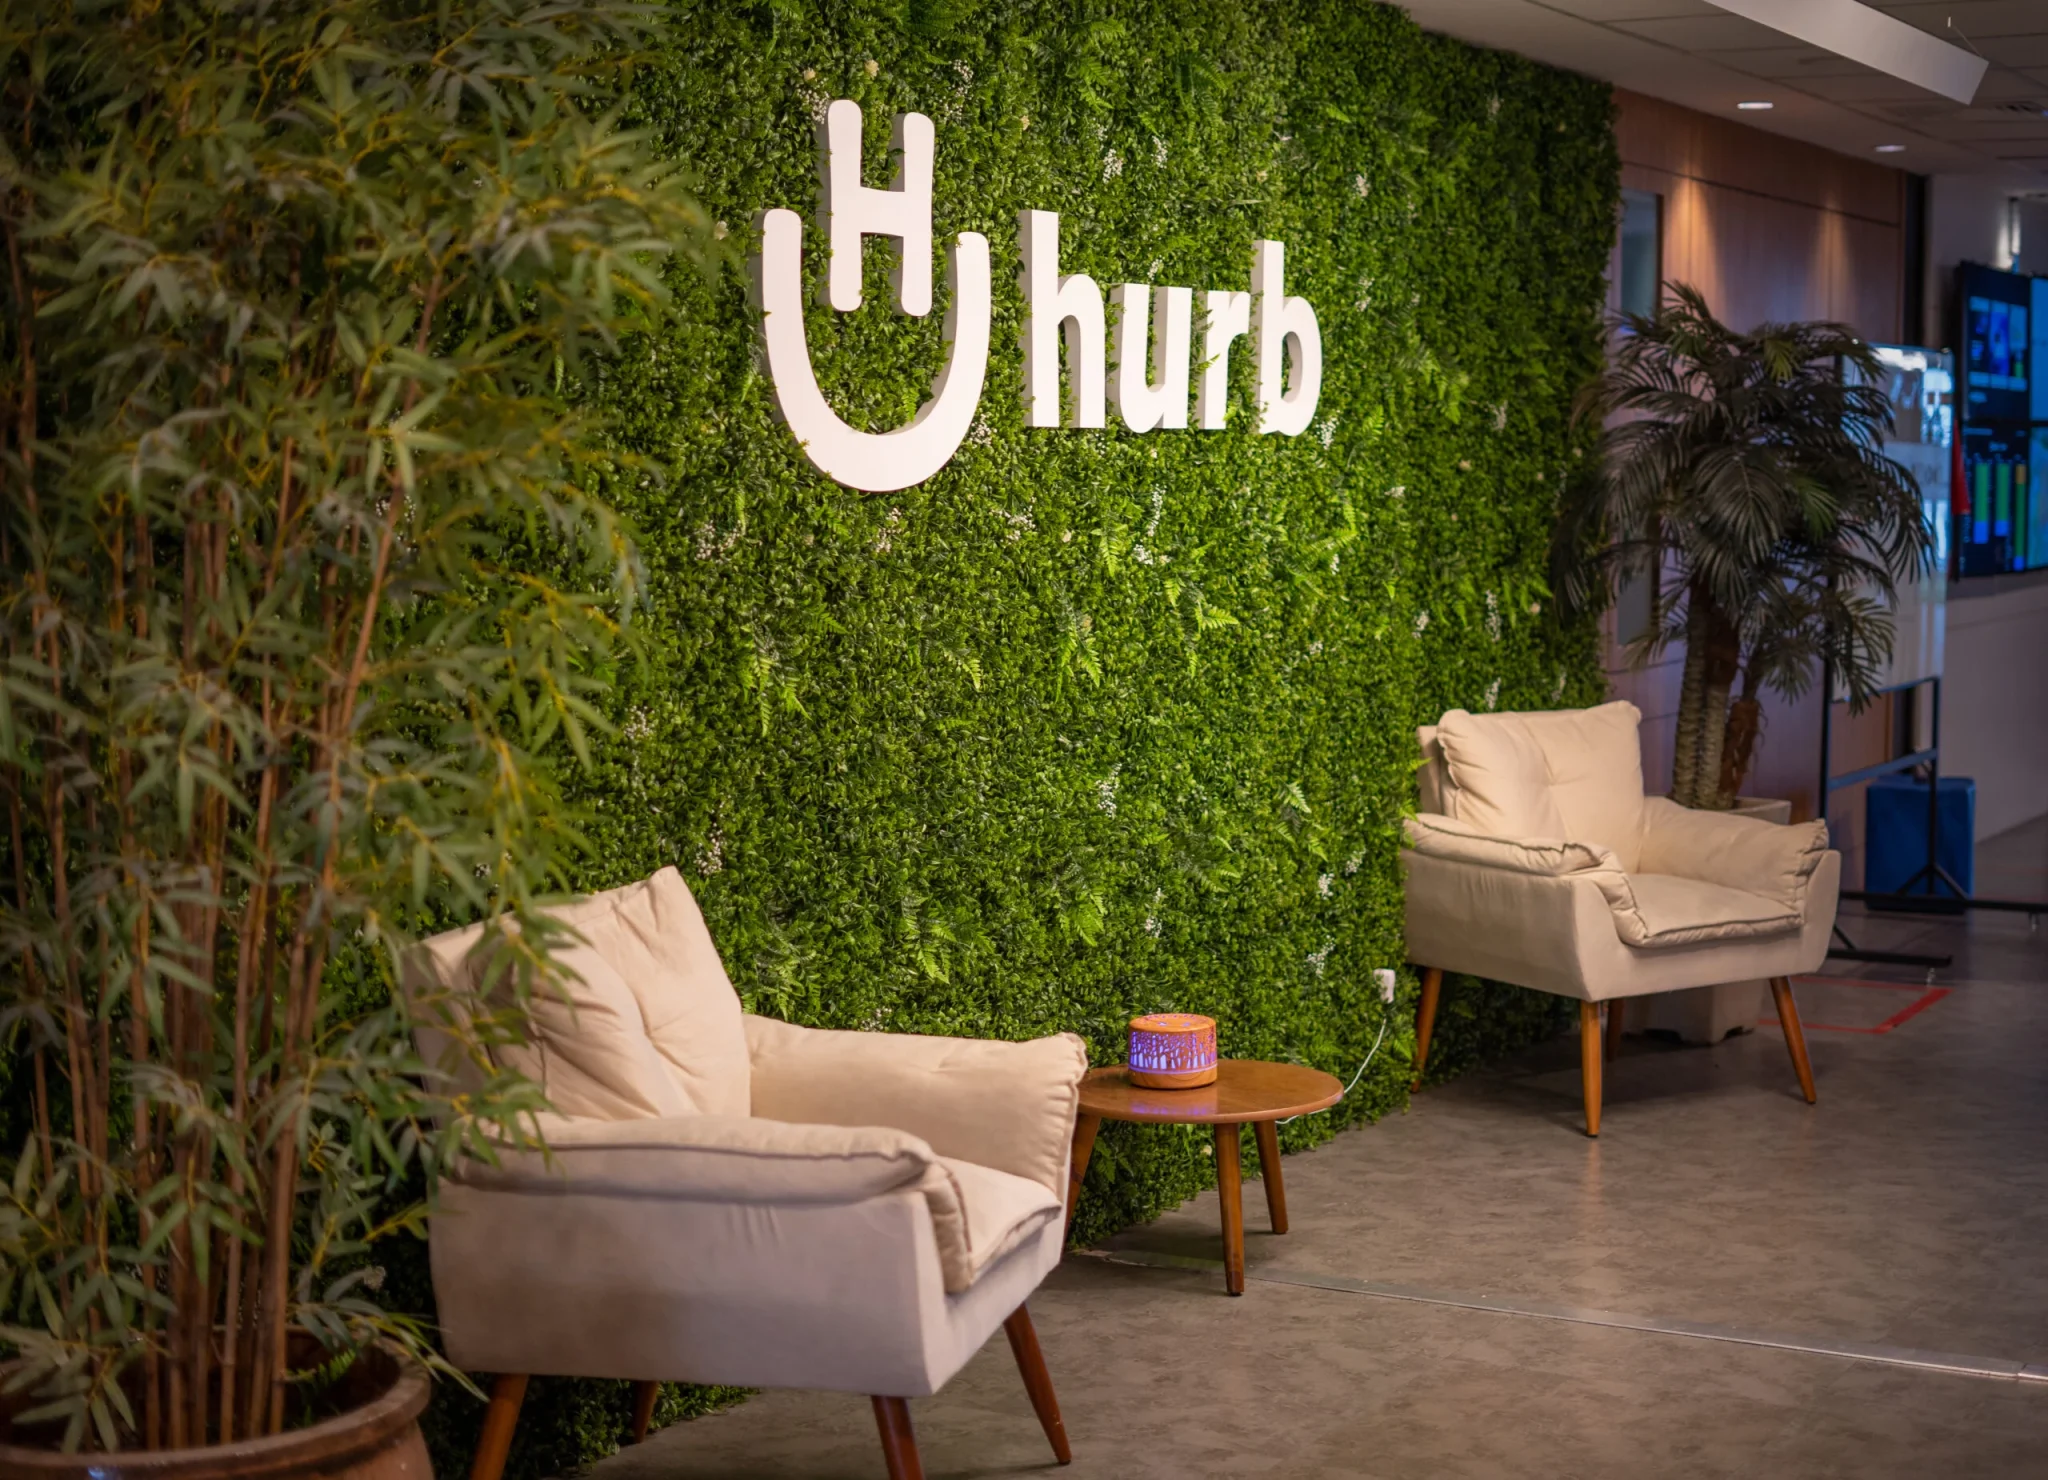 Hurb continua oferecendo pacotes de viagem mesmo após determinação do governo de suspender vendas